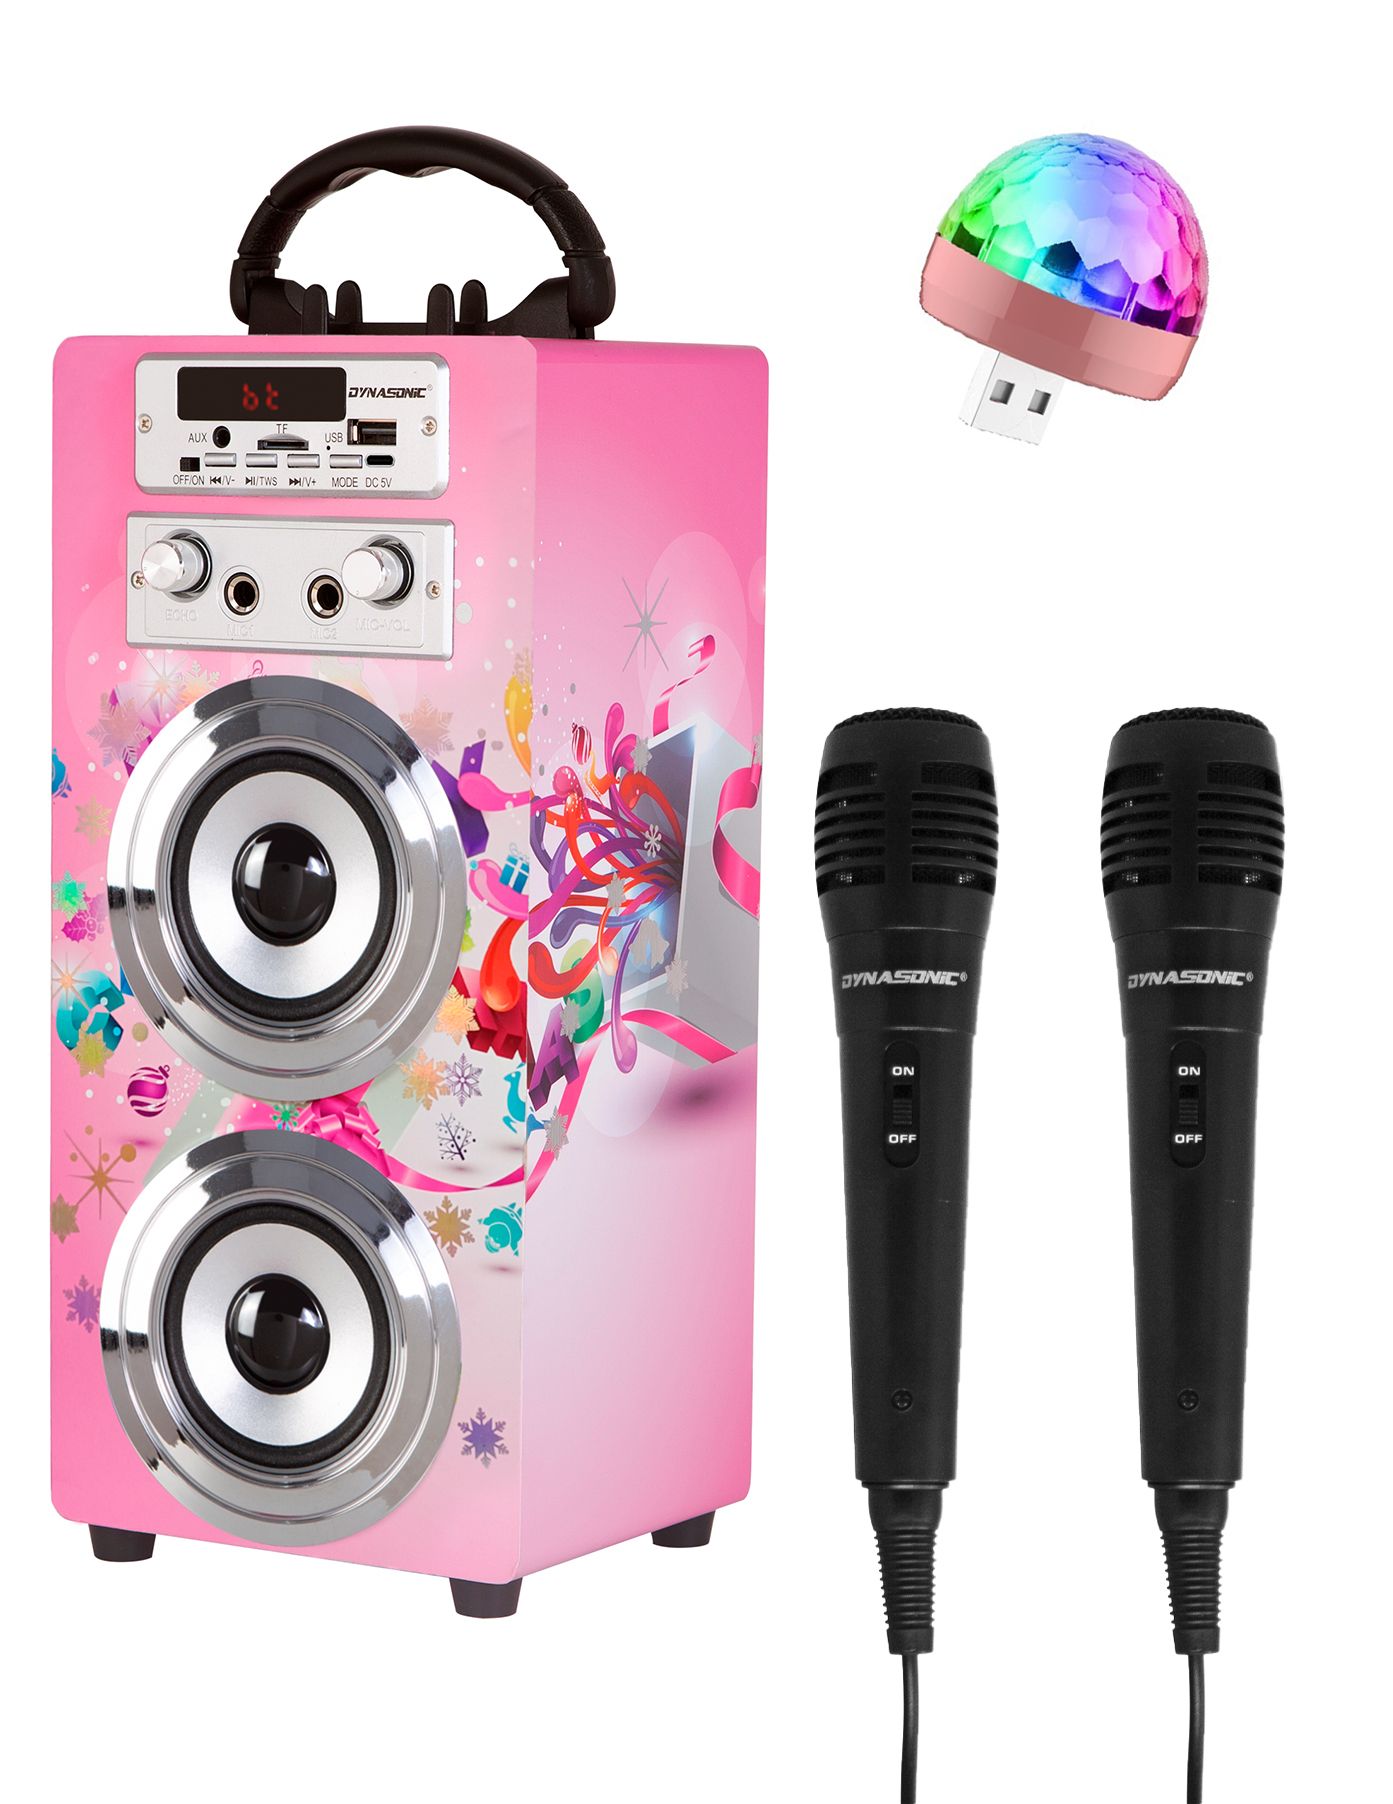 Altavoz Bluetooth Karaoke Serie 025-10 con 2 Micrófonos y luces discoteca  incluidos